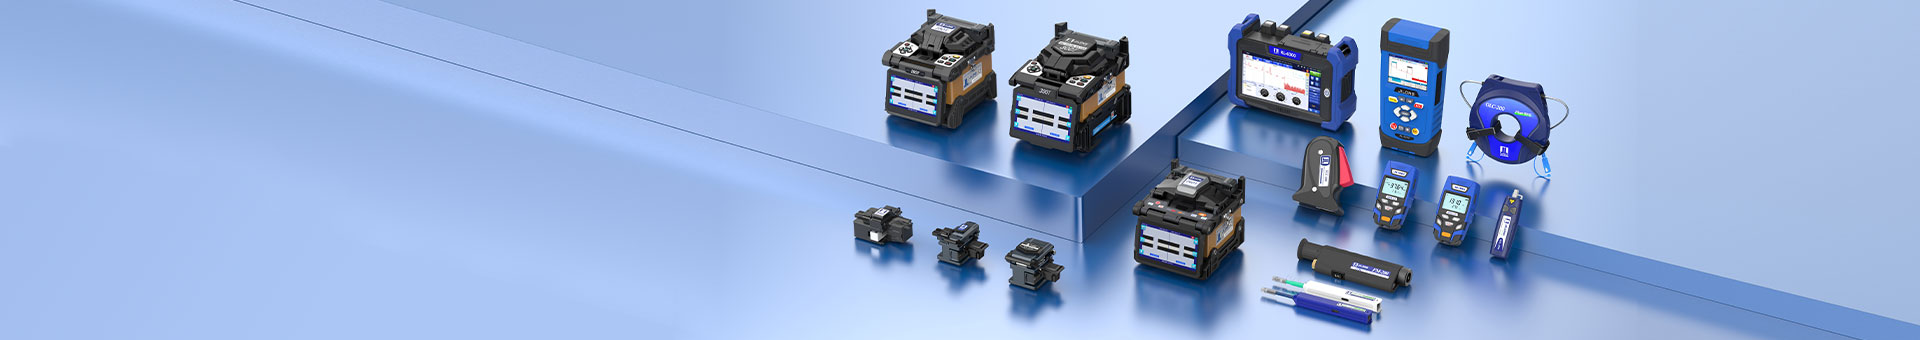 FIP-600v光纤端面检测仪,400倍光纤端面检查仪,视频光纤端面检测仪,手持光纤端面检测仪,光纤端面检测仪厂家